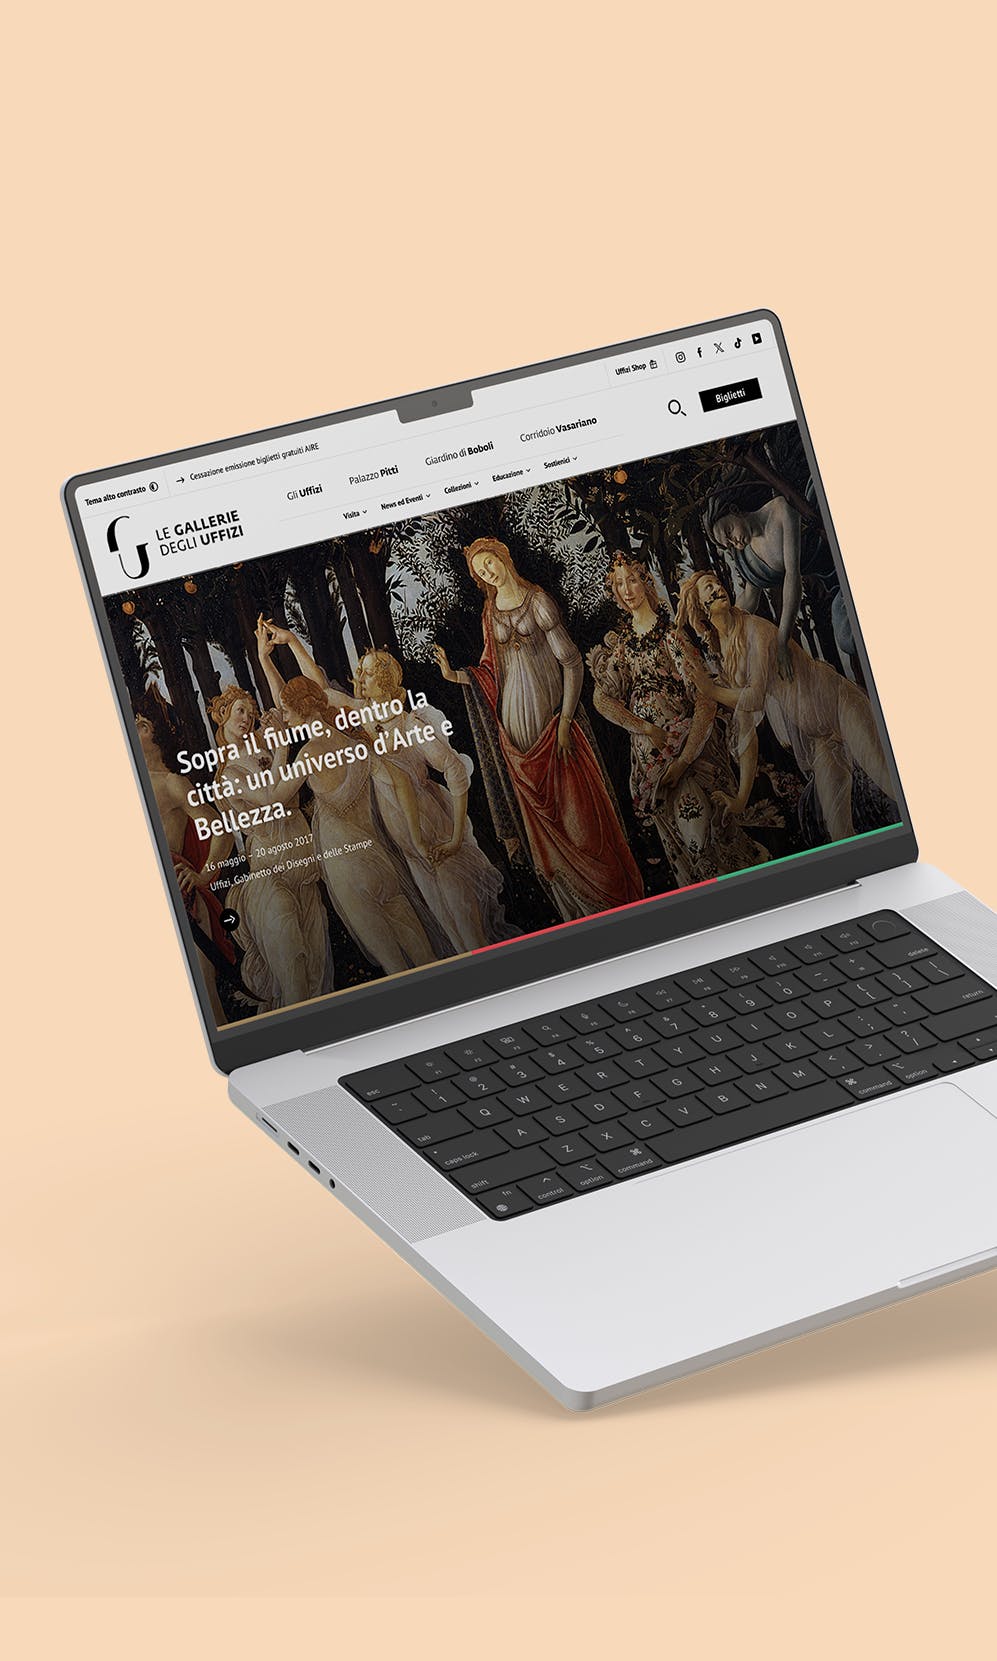 Gallerie Degli Uffizi website per presentare i servizi di web design